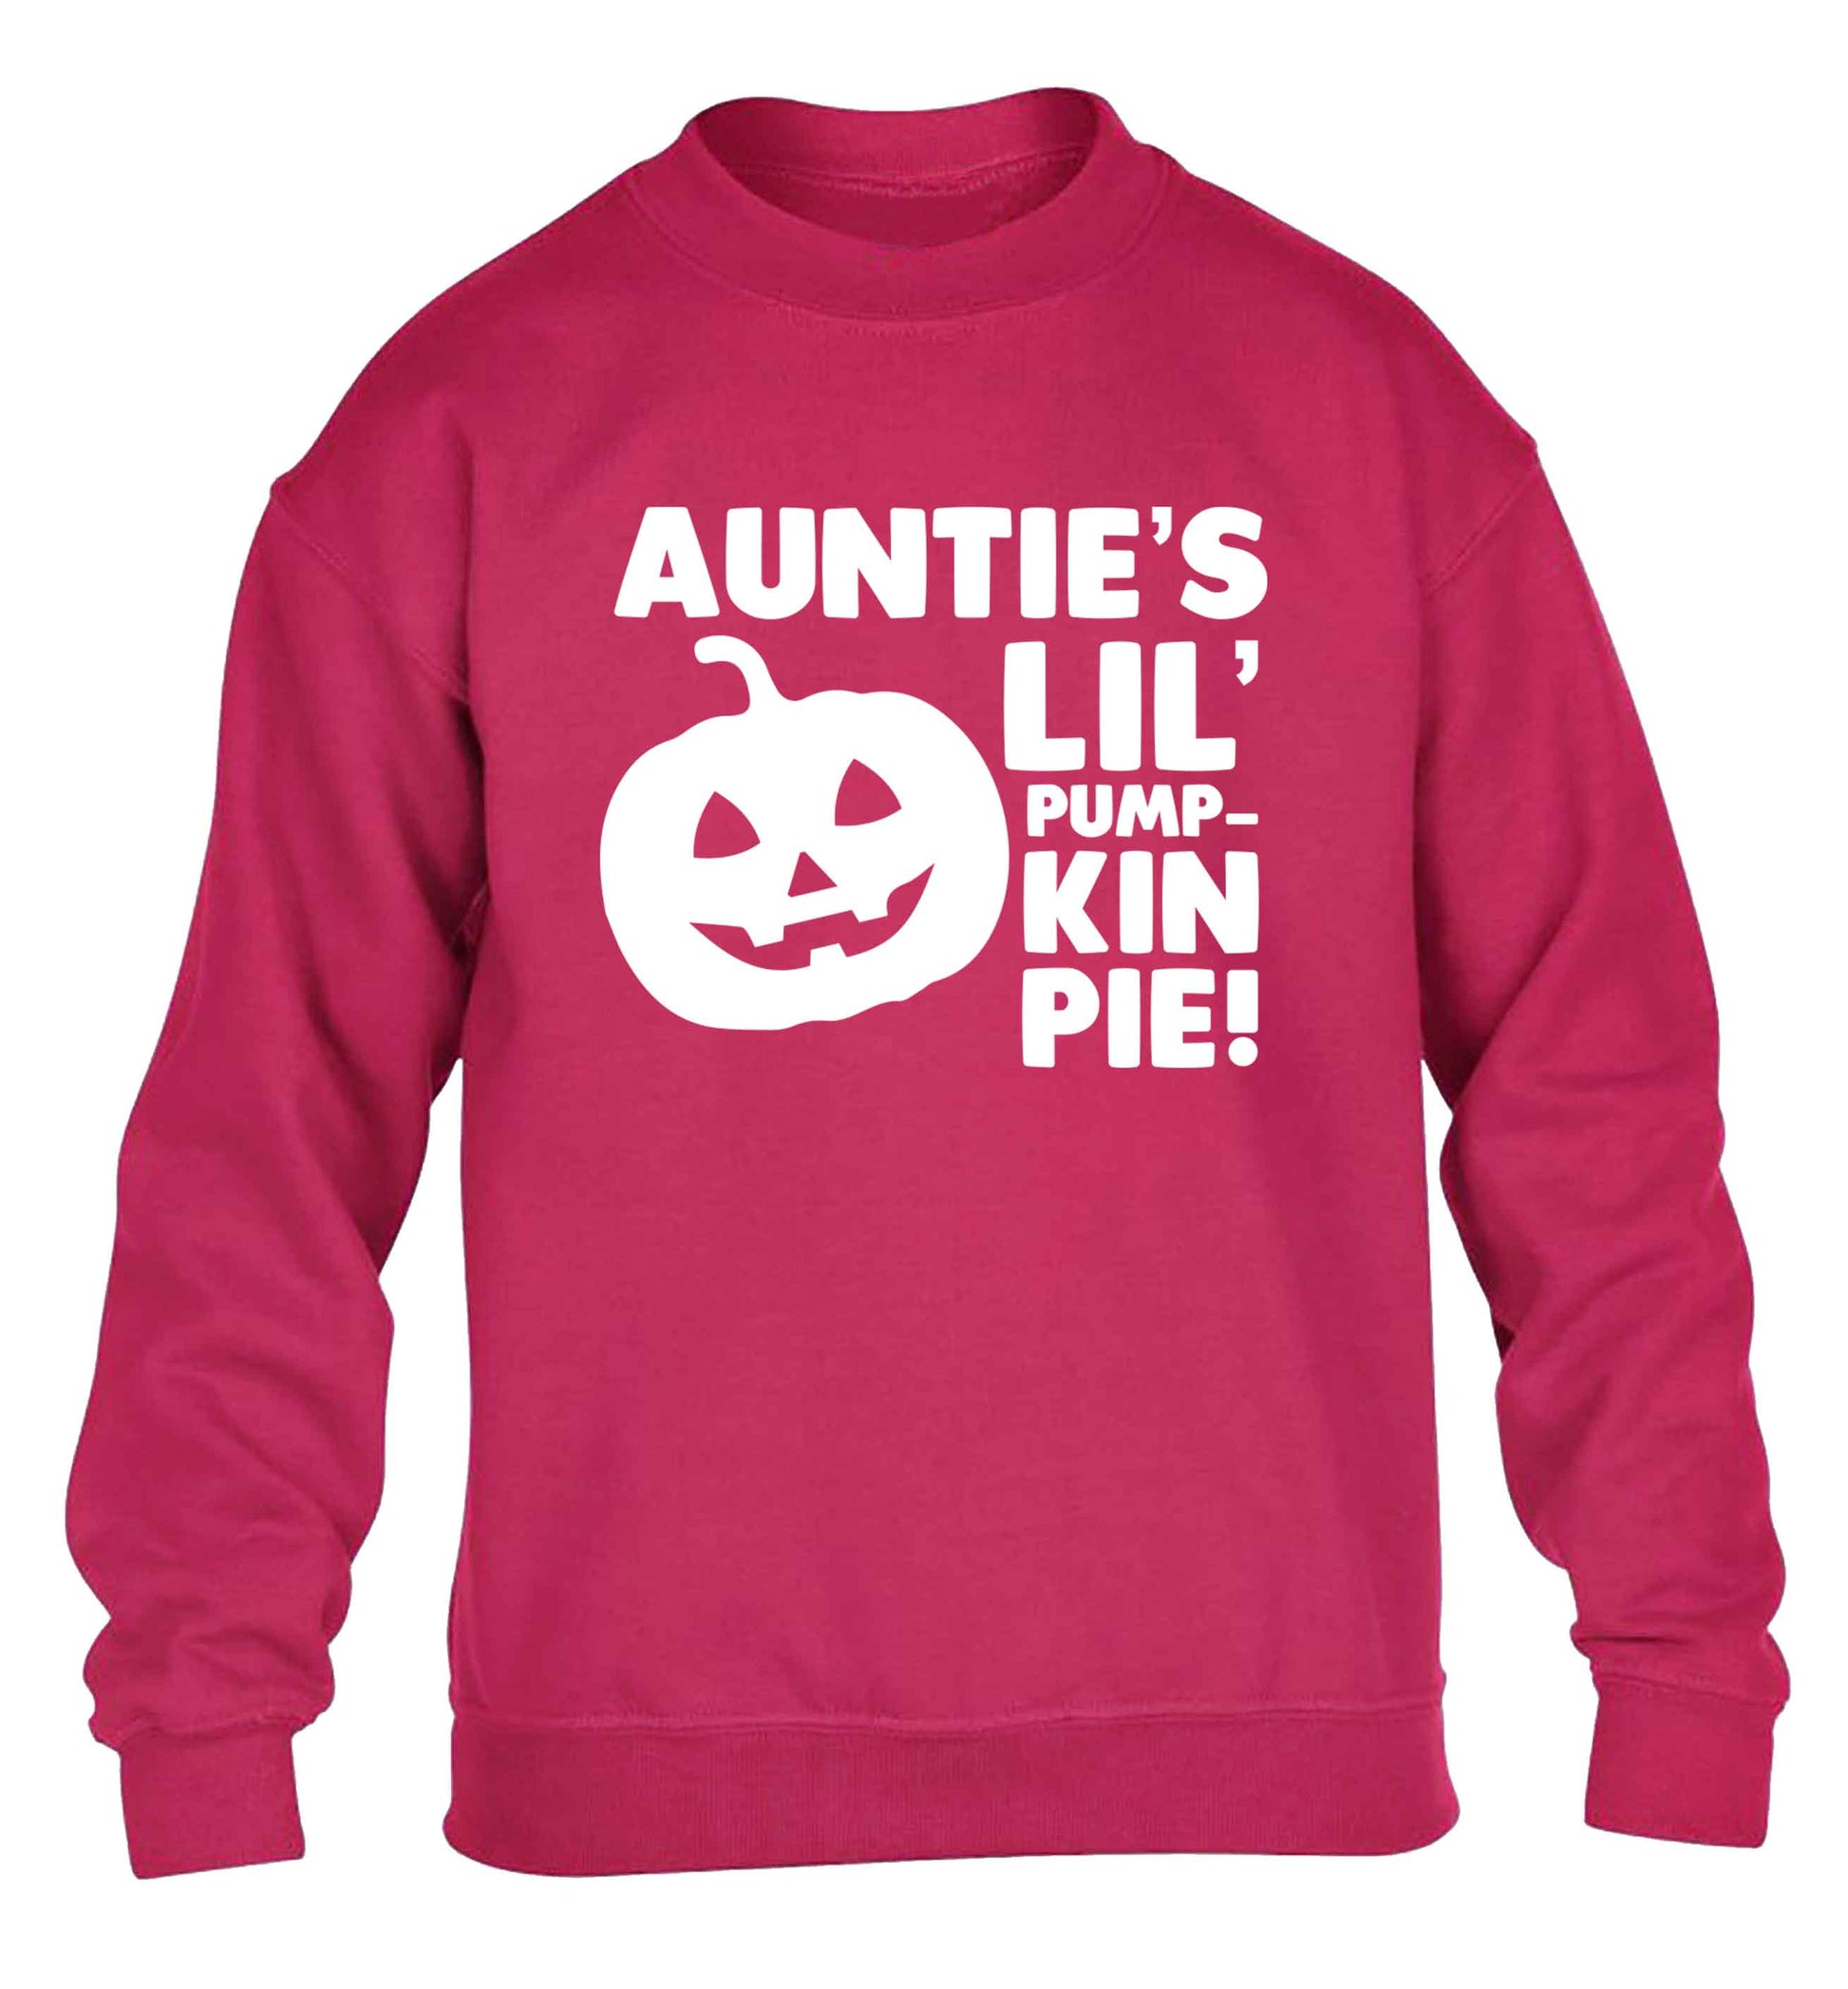 Auntie's lil' pumpkin pie children's pink sweater 12-13 Years